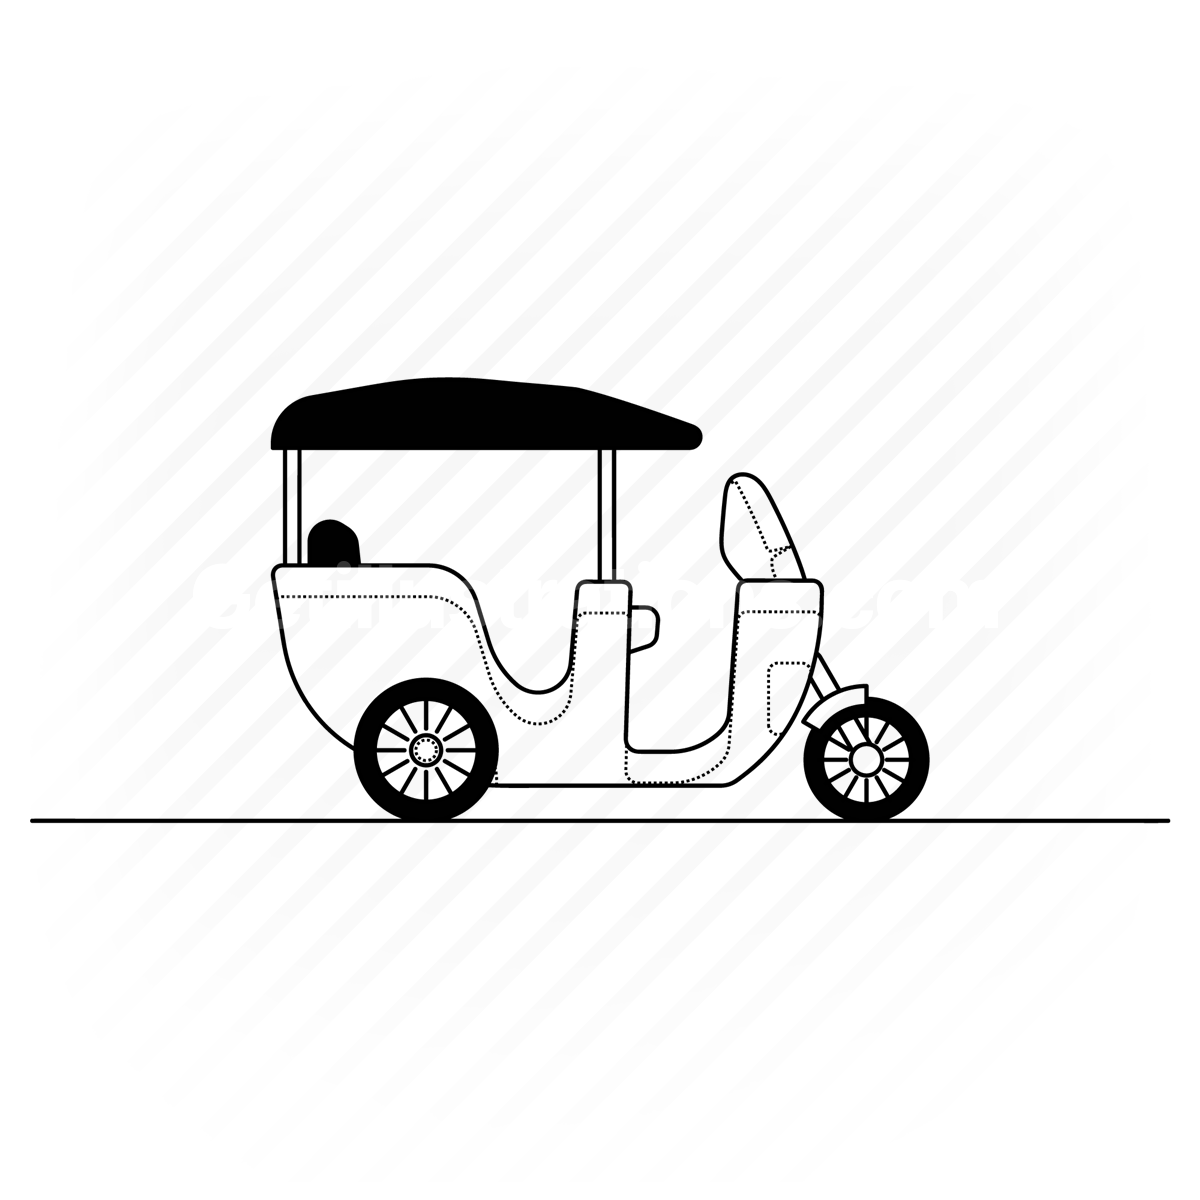 tuk-tuk, tuktuk, scooter, transport, vehicle, motorcycle, travel